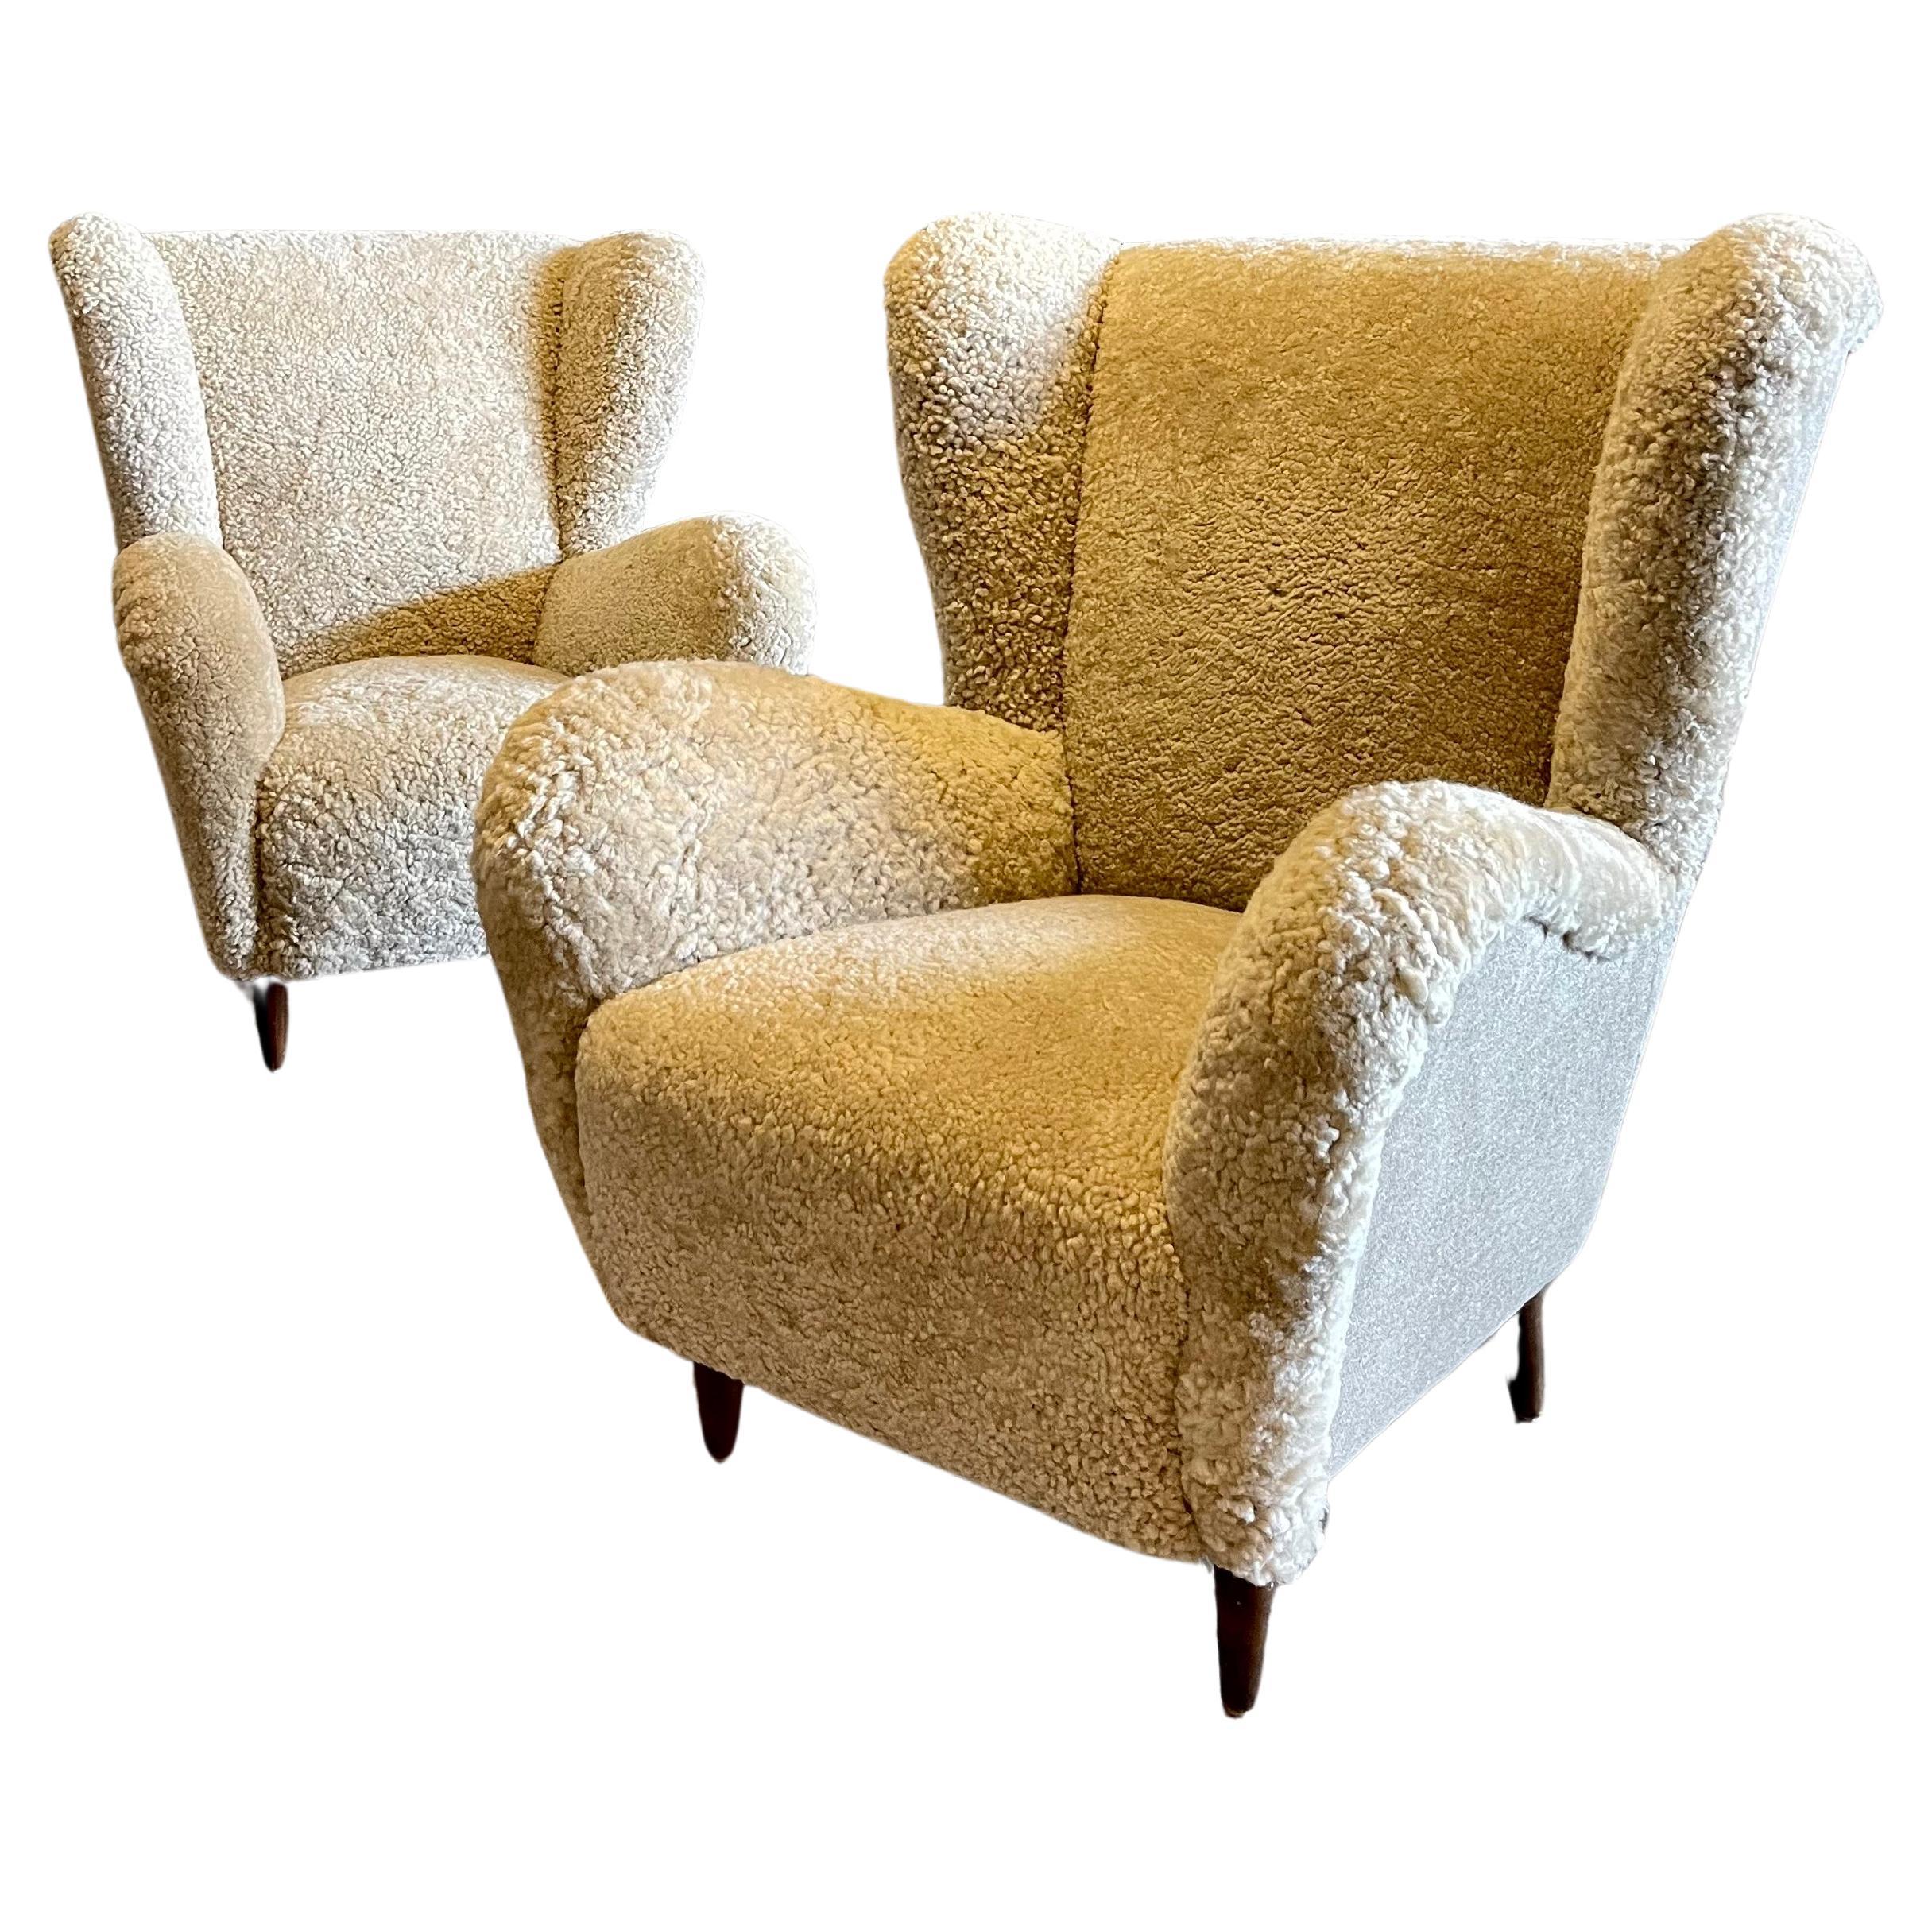 Italian Wingback Club Chairs, Gio Ponti, Sheepskin, Danish Wool Tweed, Shearling For Sale